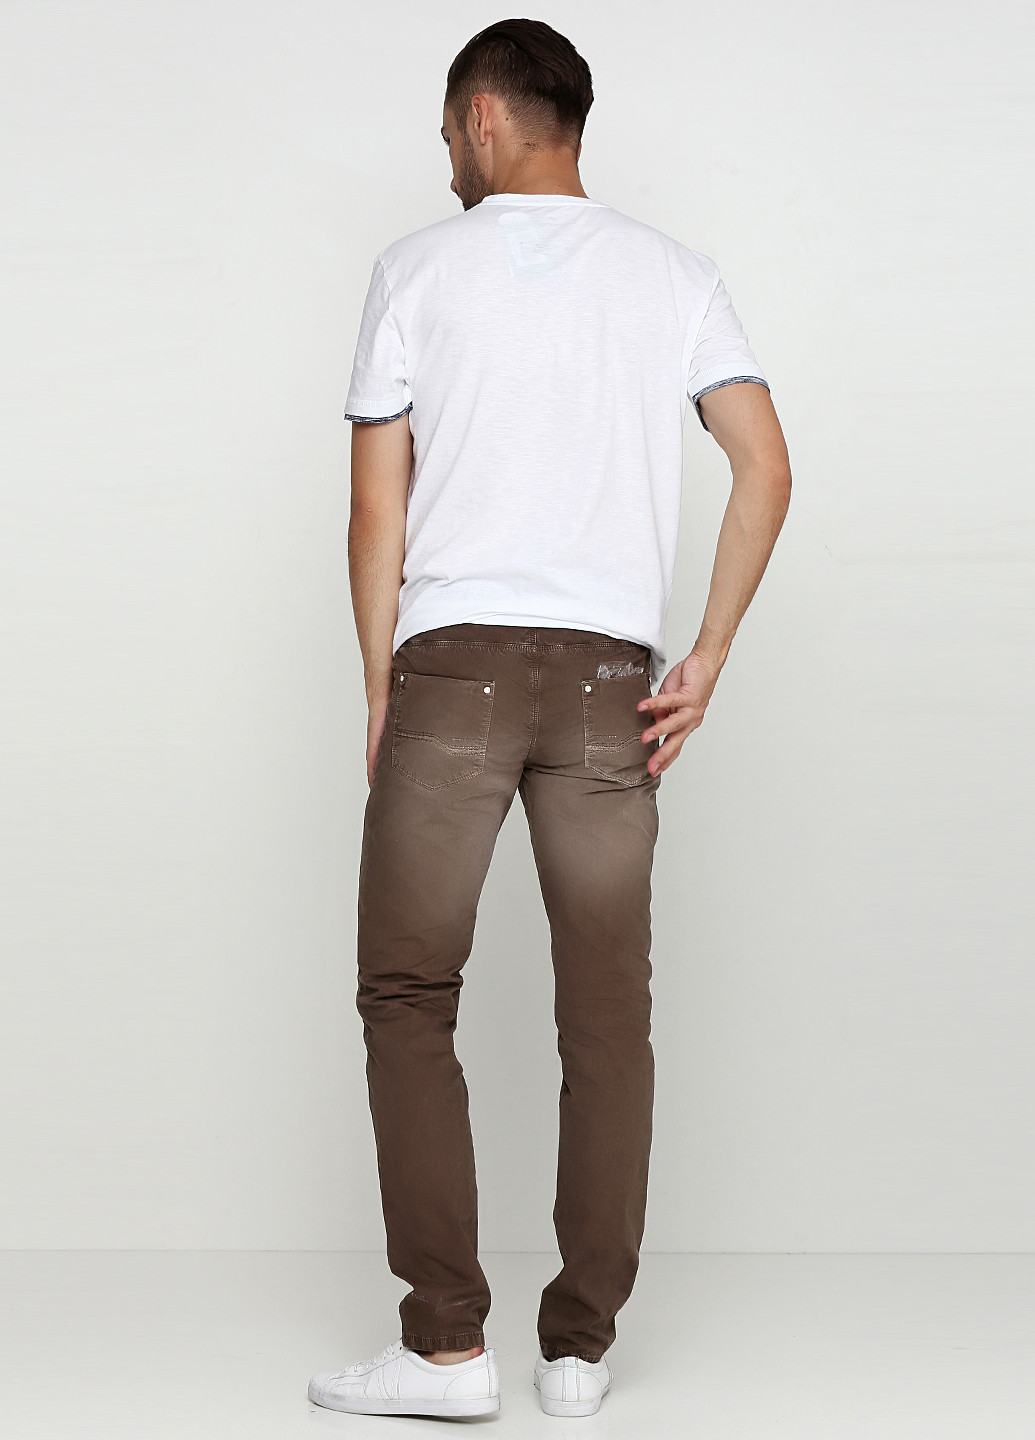 Темно-коричневые демисезонные прямые джинсы Hamaki-Ho